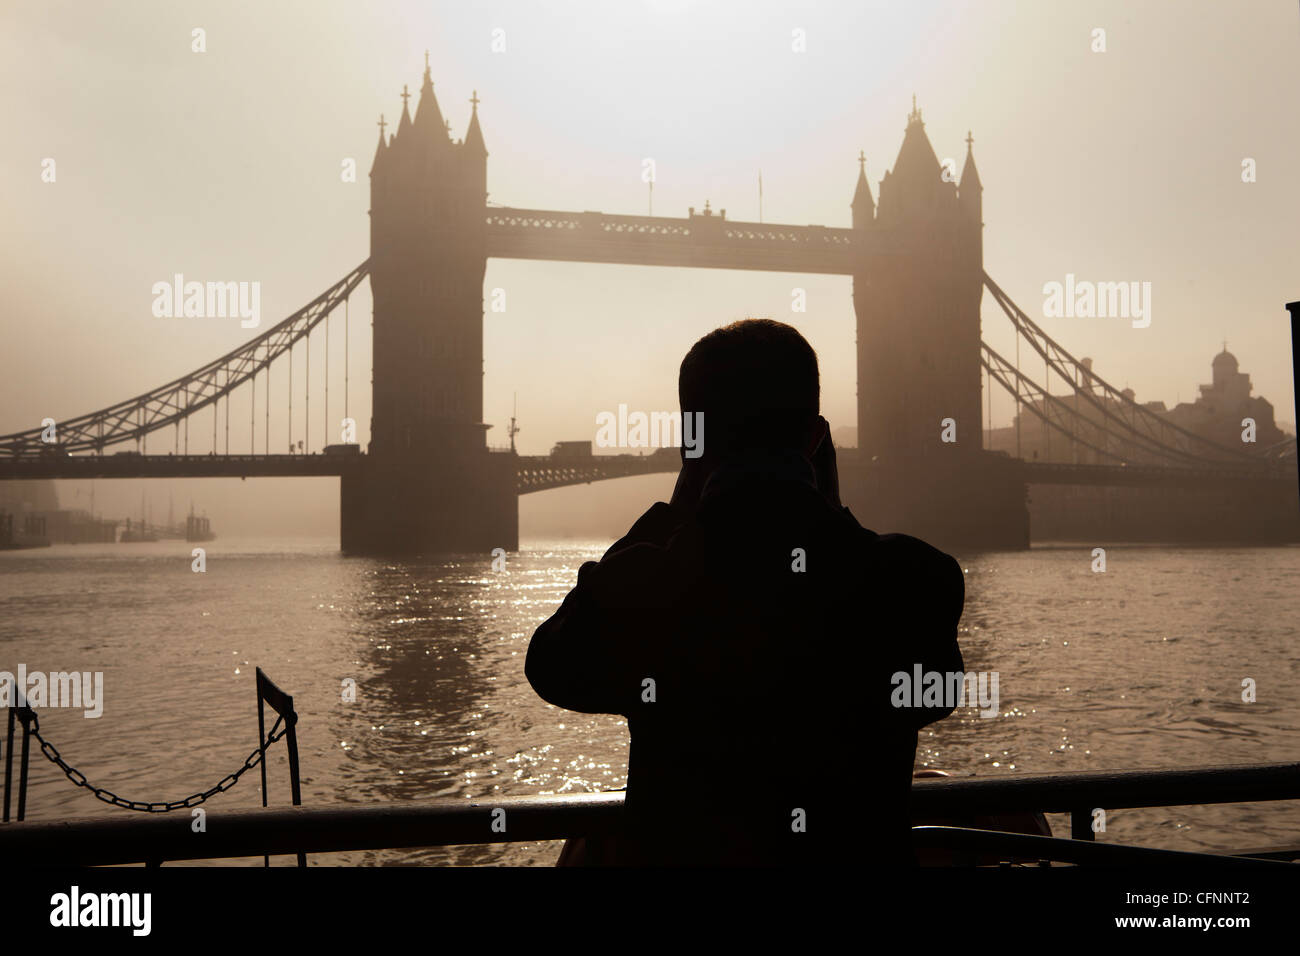 La silhouette di un turista prendere una fotografia del Tower Bridge all'alba Foto Stock